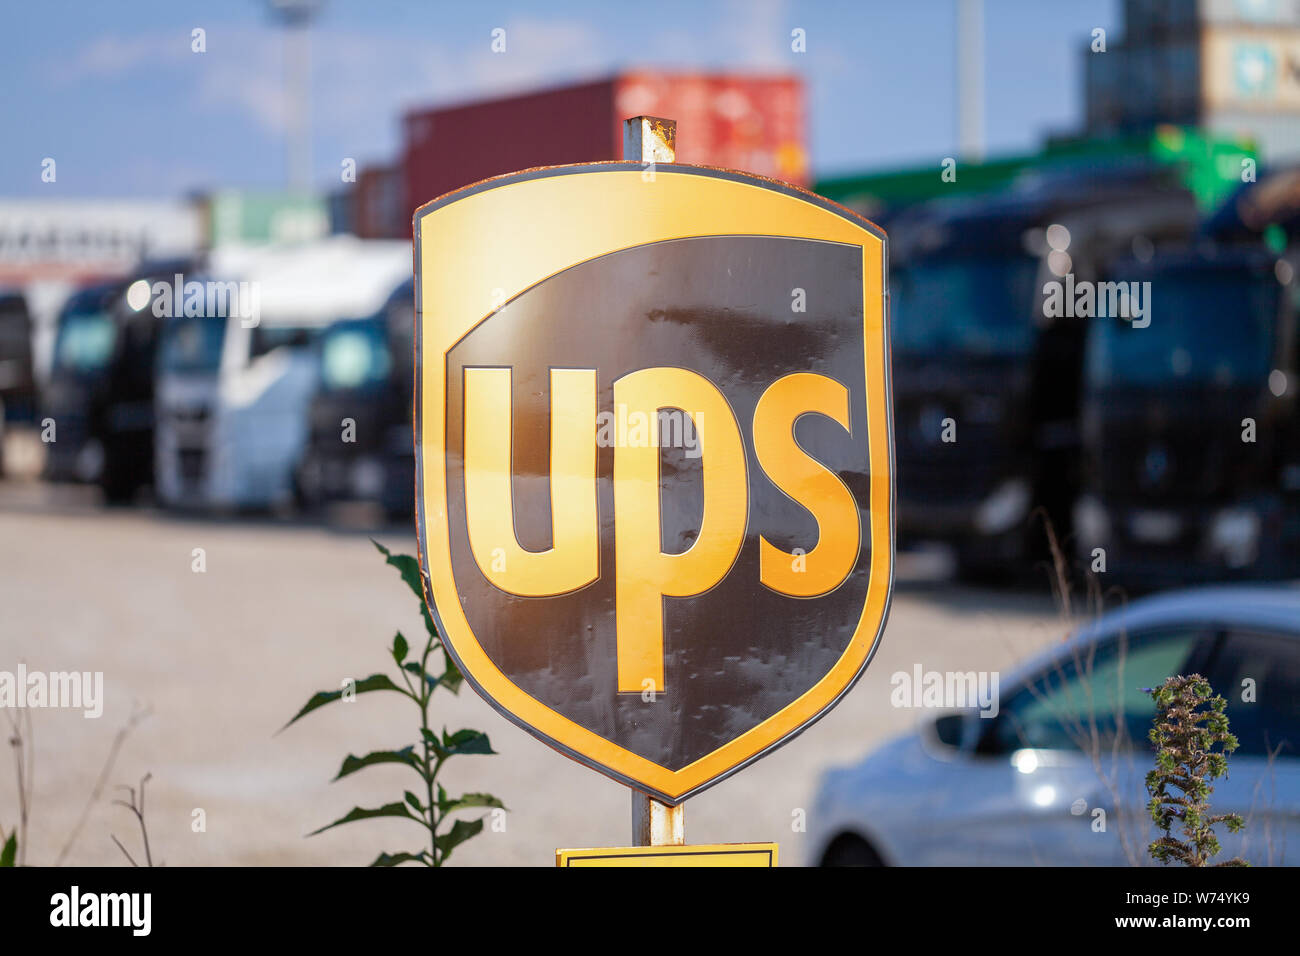 Nürnberg/Deutschland - August 4, 2019: Firma Zeichen von den amerikanischen multinationalen Paketzustellung, United Parcel Service (UPS), steht in der Nähe der angegebenen Stockfoto